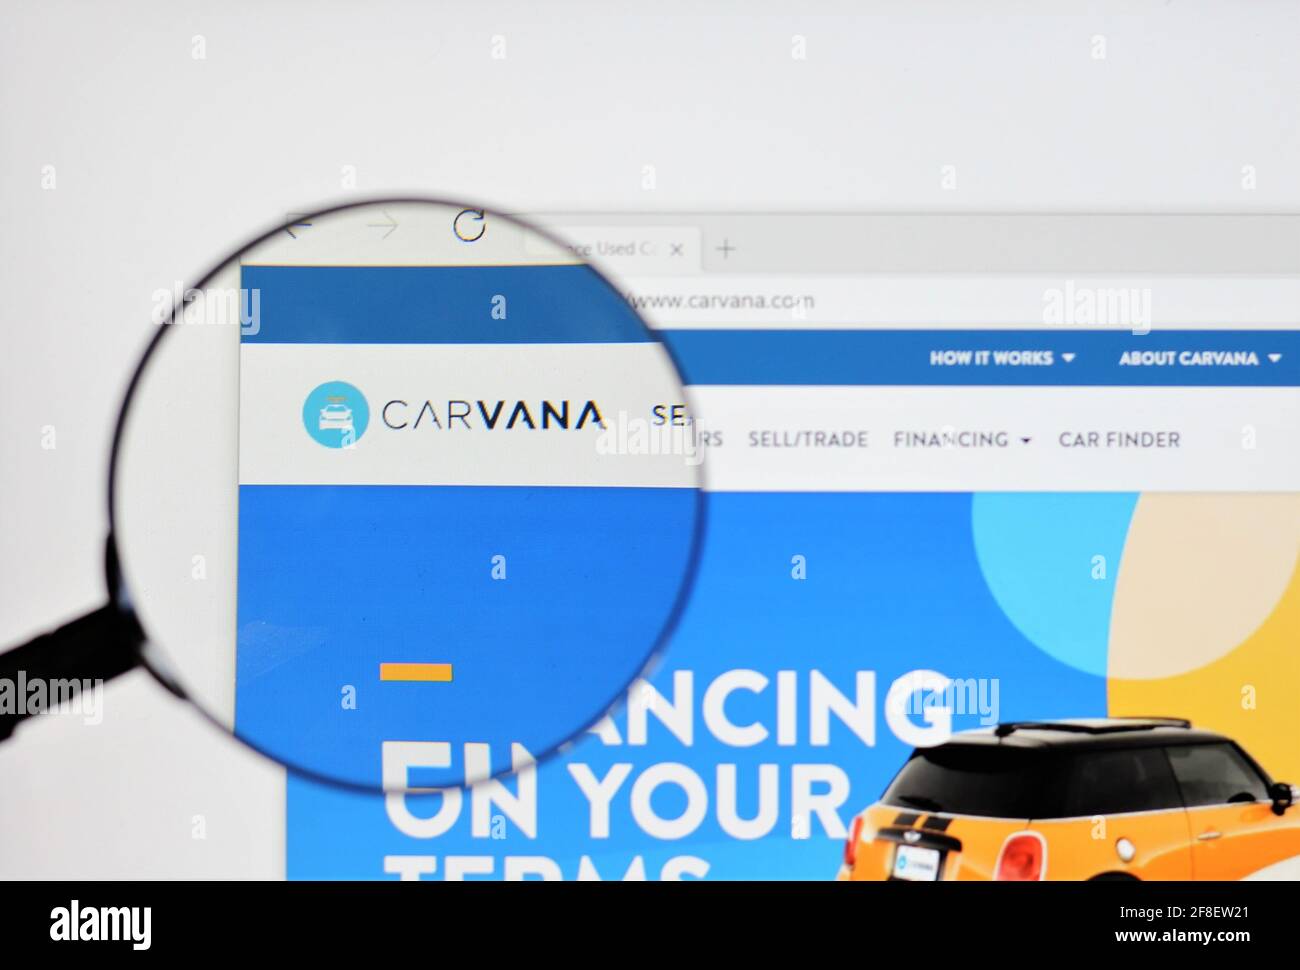 Carvana ist ein Online-Gebrauchtwagenhändler mit Sitz in Tempe, Arizona. Das Unternehmen ist bekannt für seine mehrstöckigen Automatenautomaten. Website, Online-Konzept Stockfoto